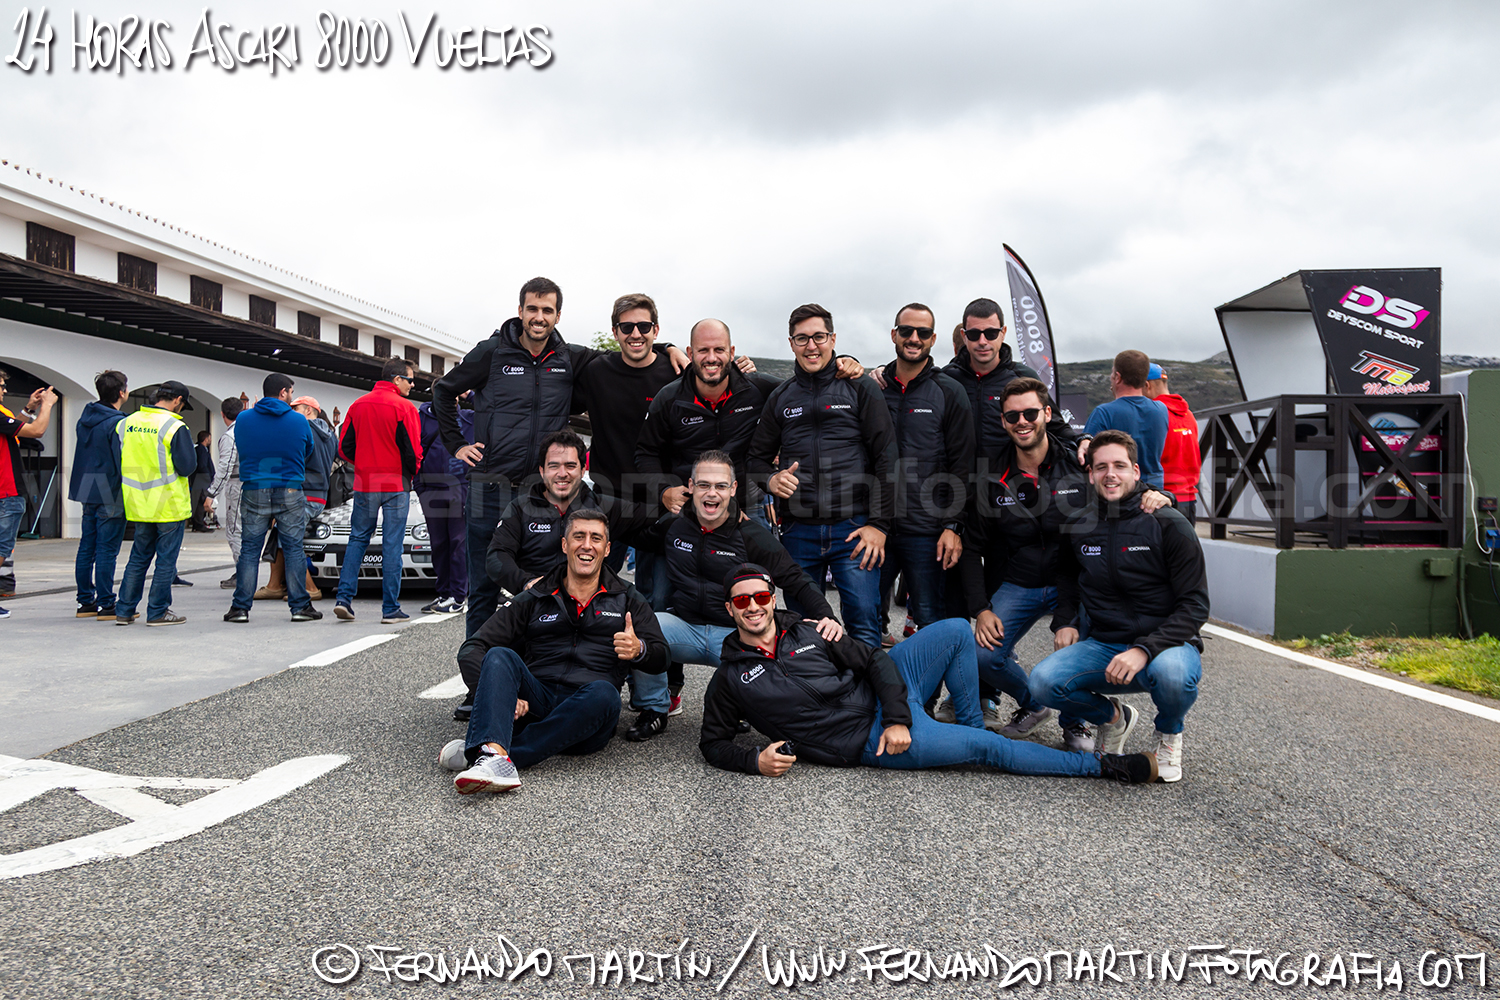 24 Horas de Ascari 2019 8000 Vueltas